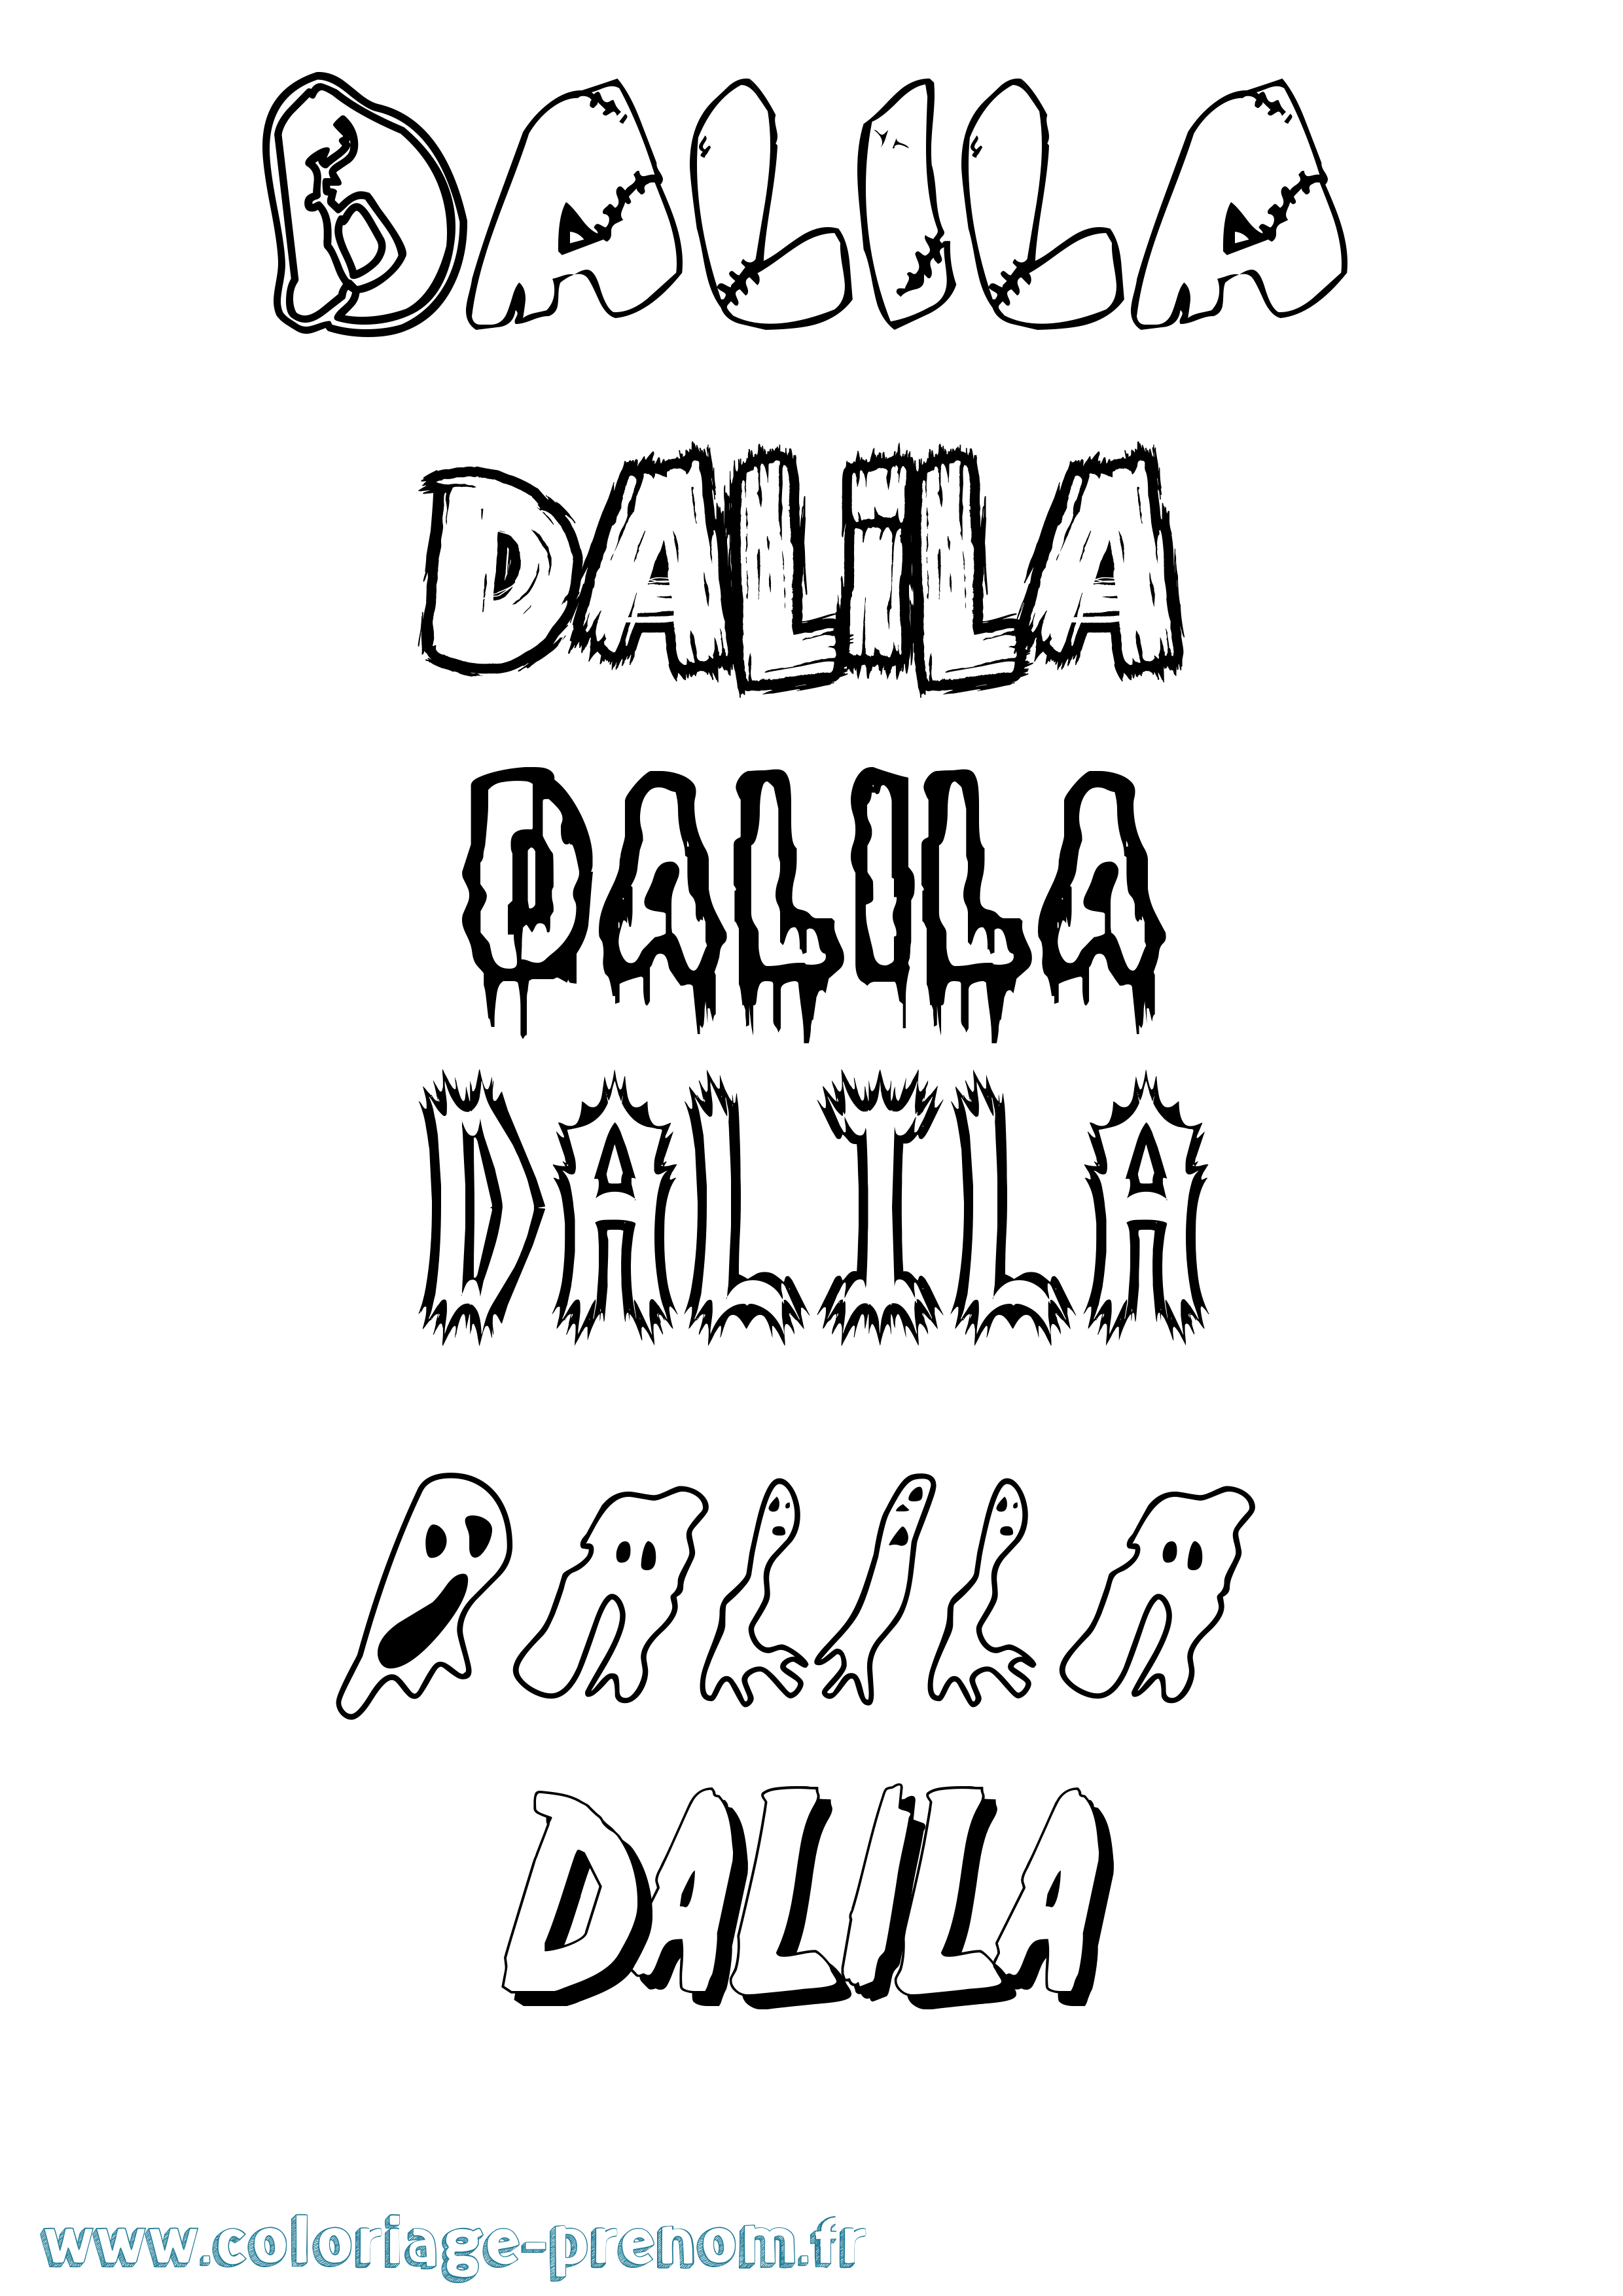 Coloriage prénom Dalila Frisson